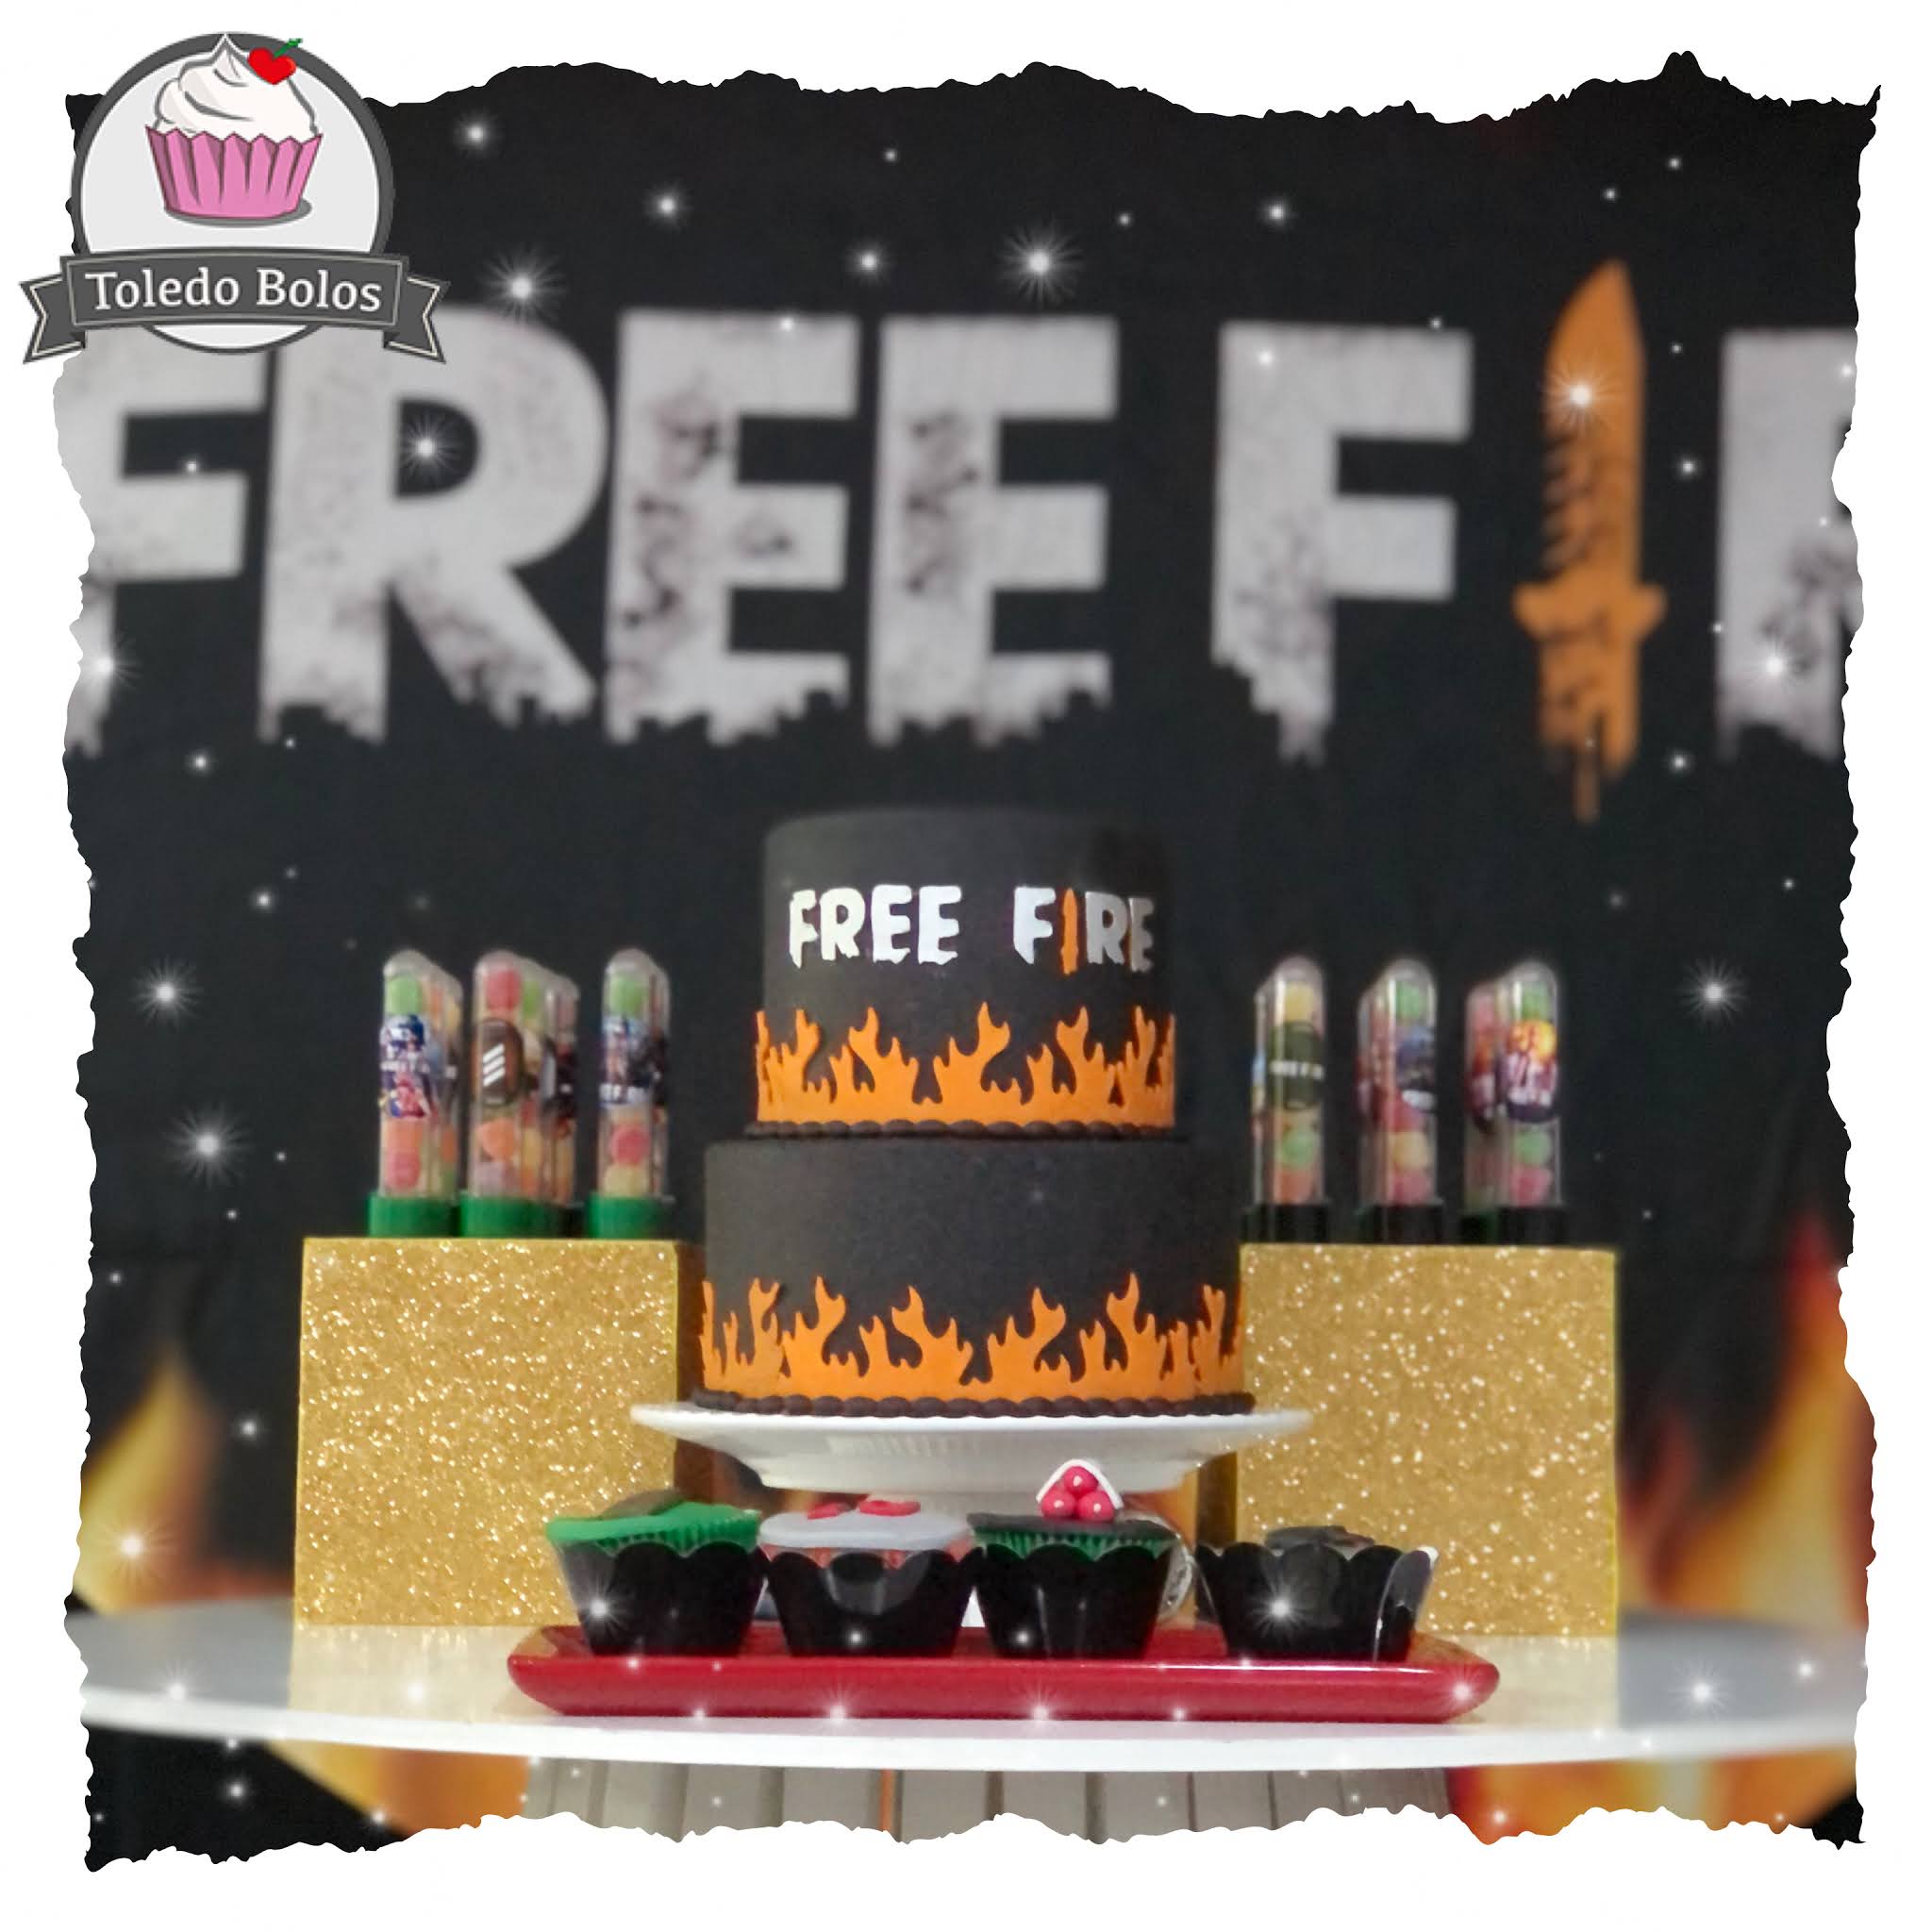 bolos free fire